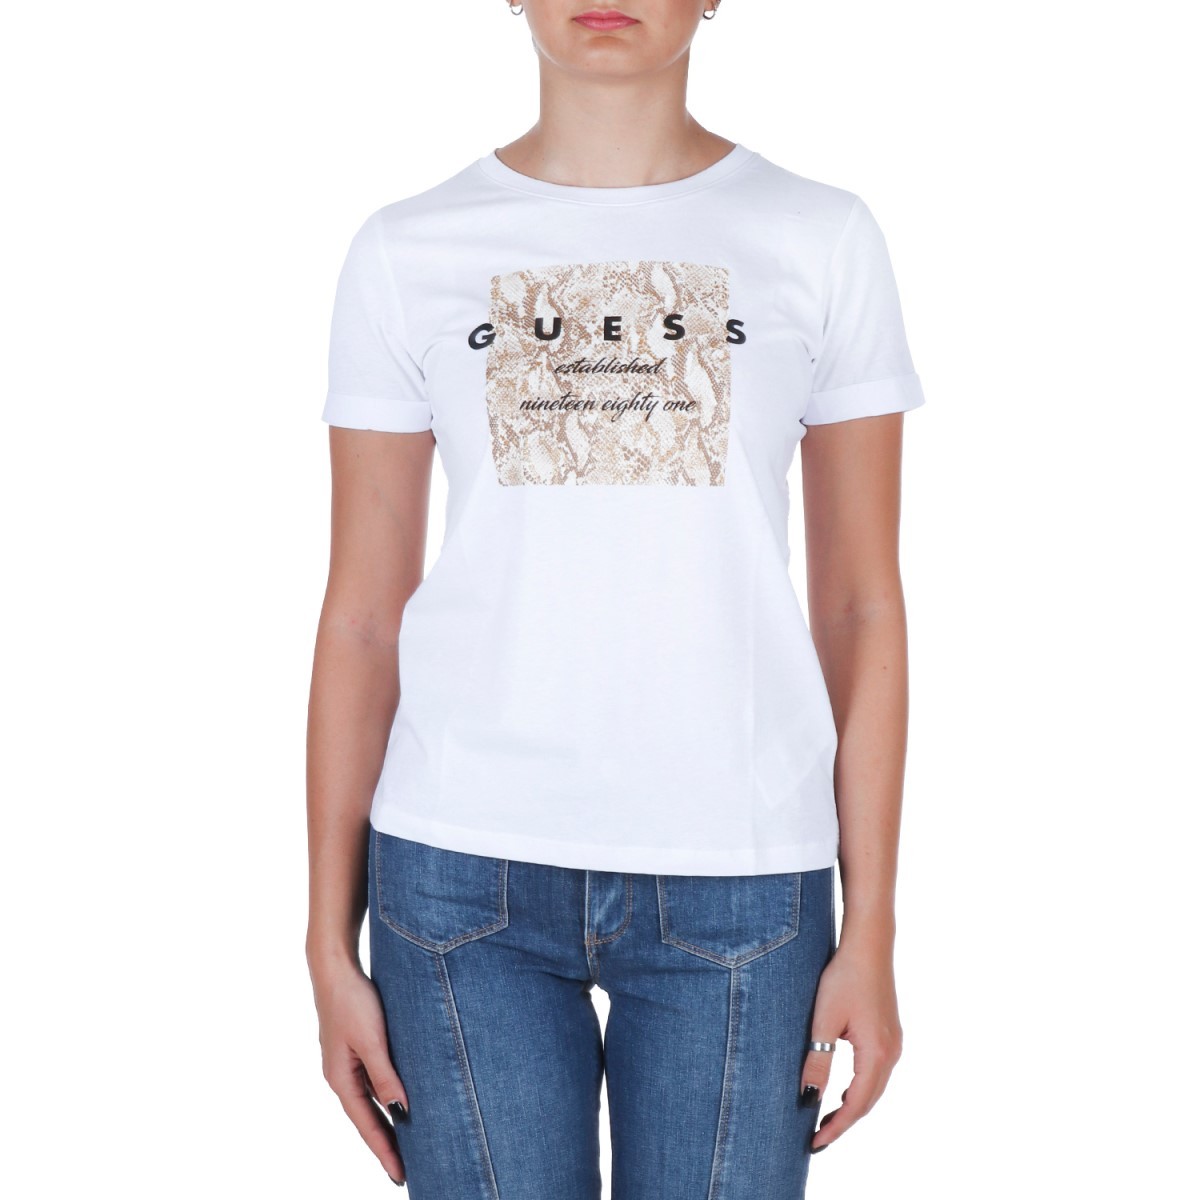 T-shirt donna shop online - T-shirt donna vendita online - Autunno Inverno  - Gulliver Collection